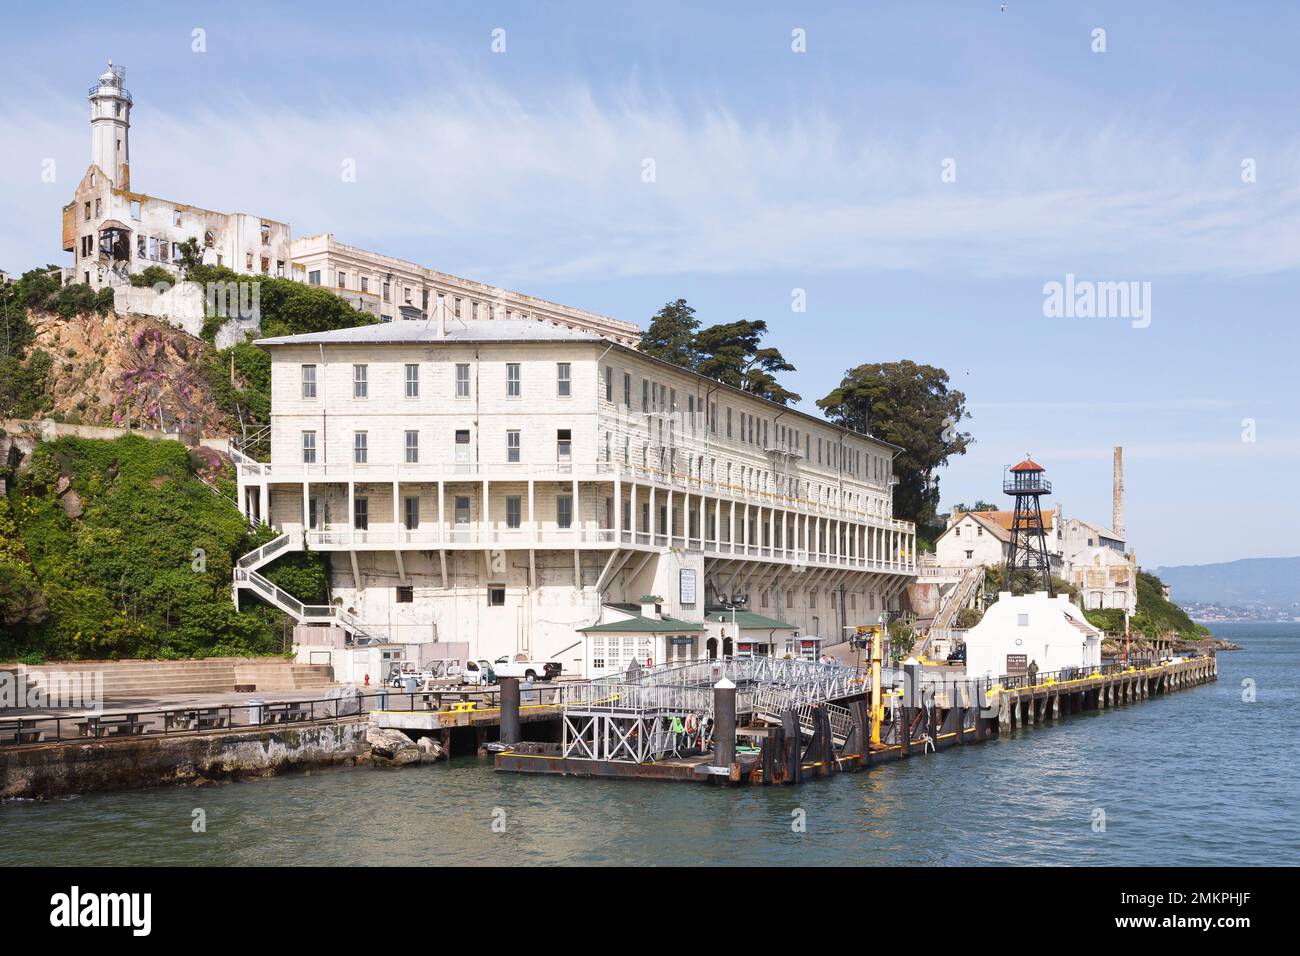 SAN FRANCISCO, Californie - 26 avril 2010. Prison d'Alcatraz, aujourd'hui musée sur l'île d'Alcatraz, San Francisco, Californie Banque D'Images